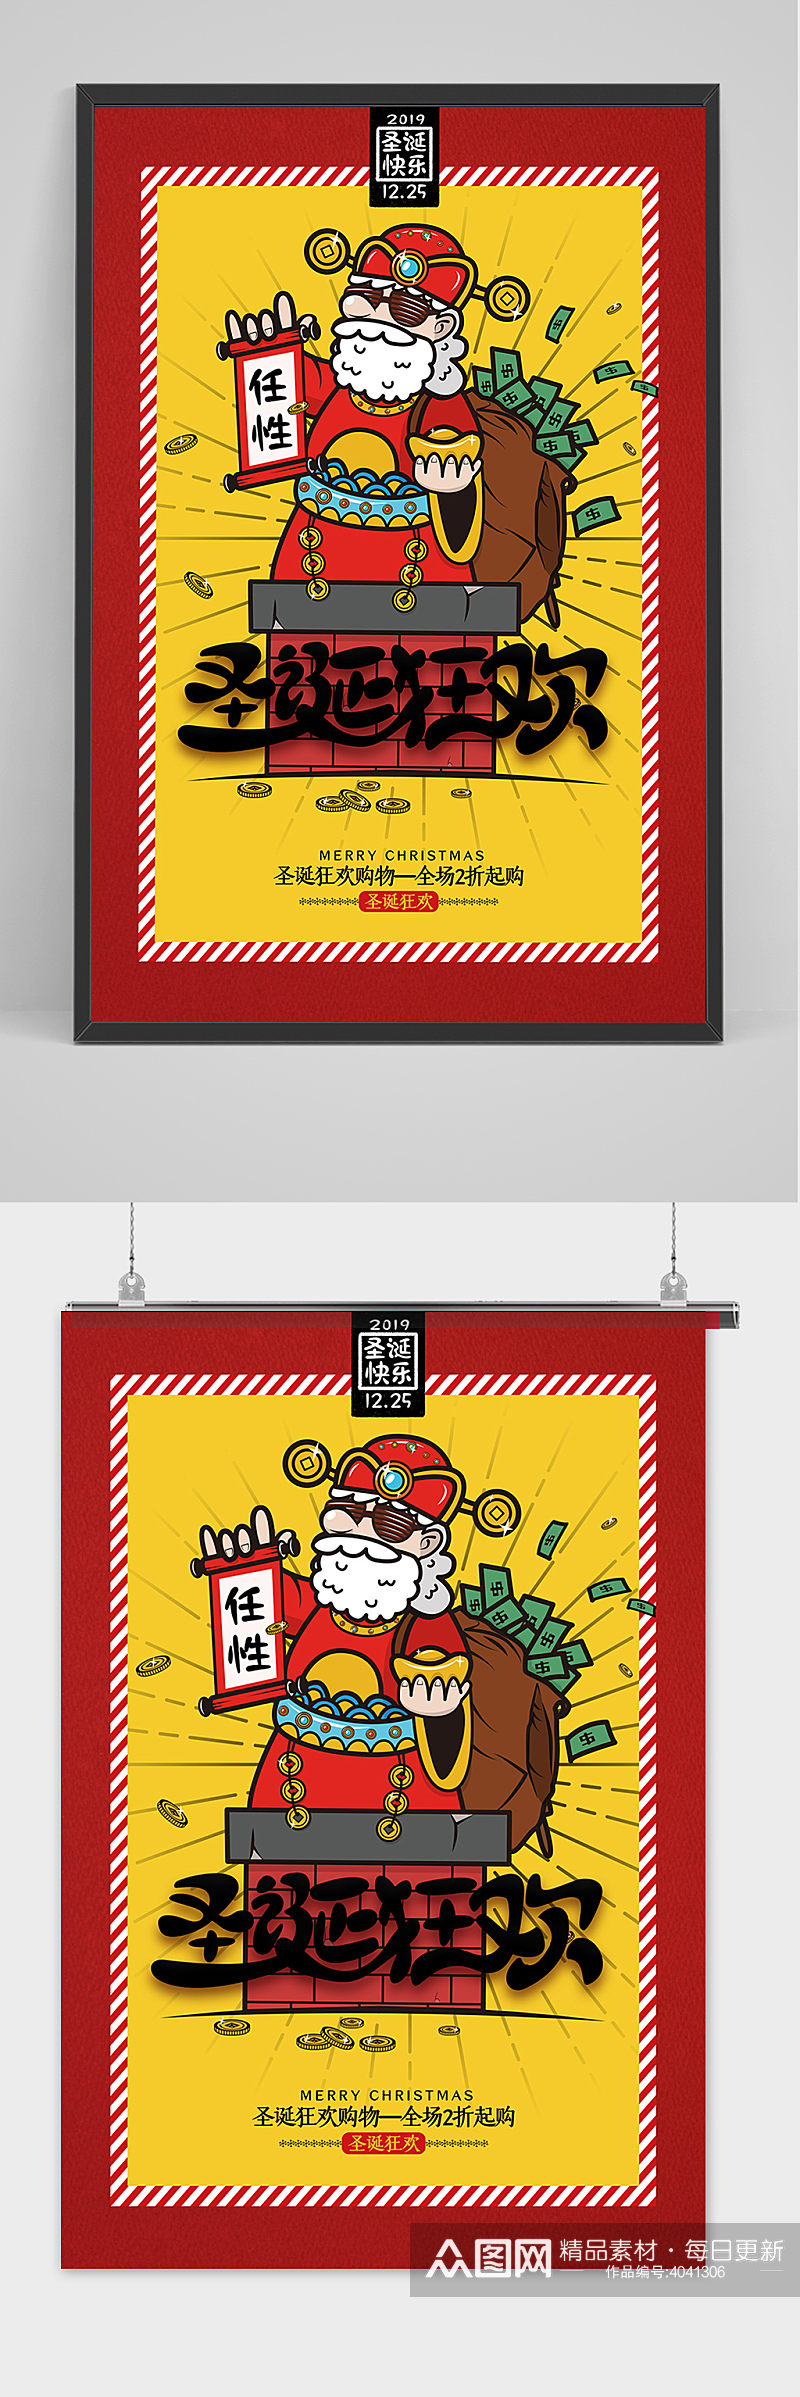 红色简约圣诞狂欢圣诞节海报设计素材